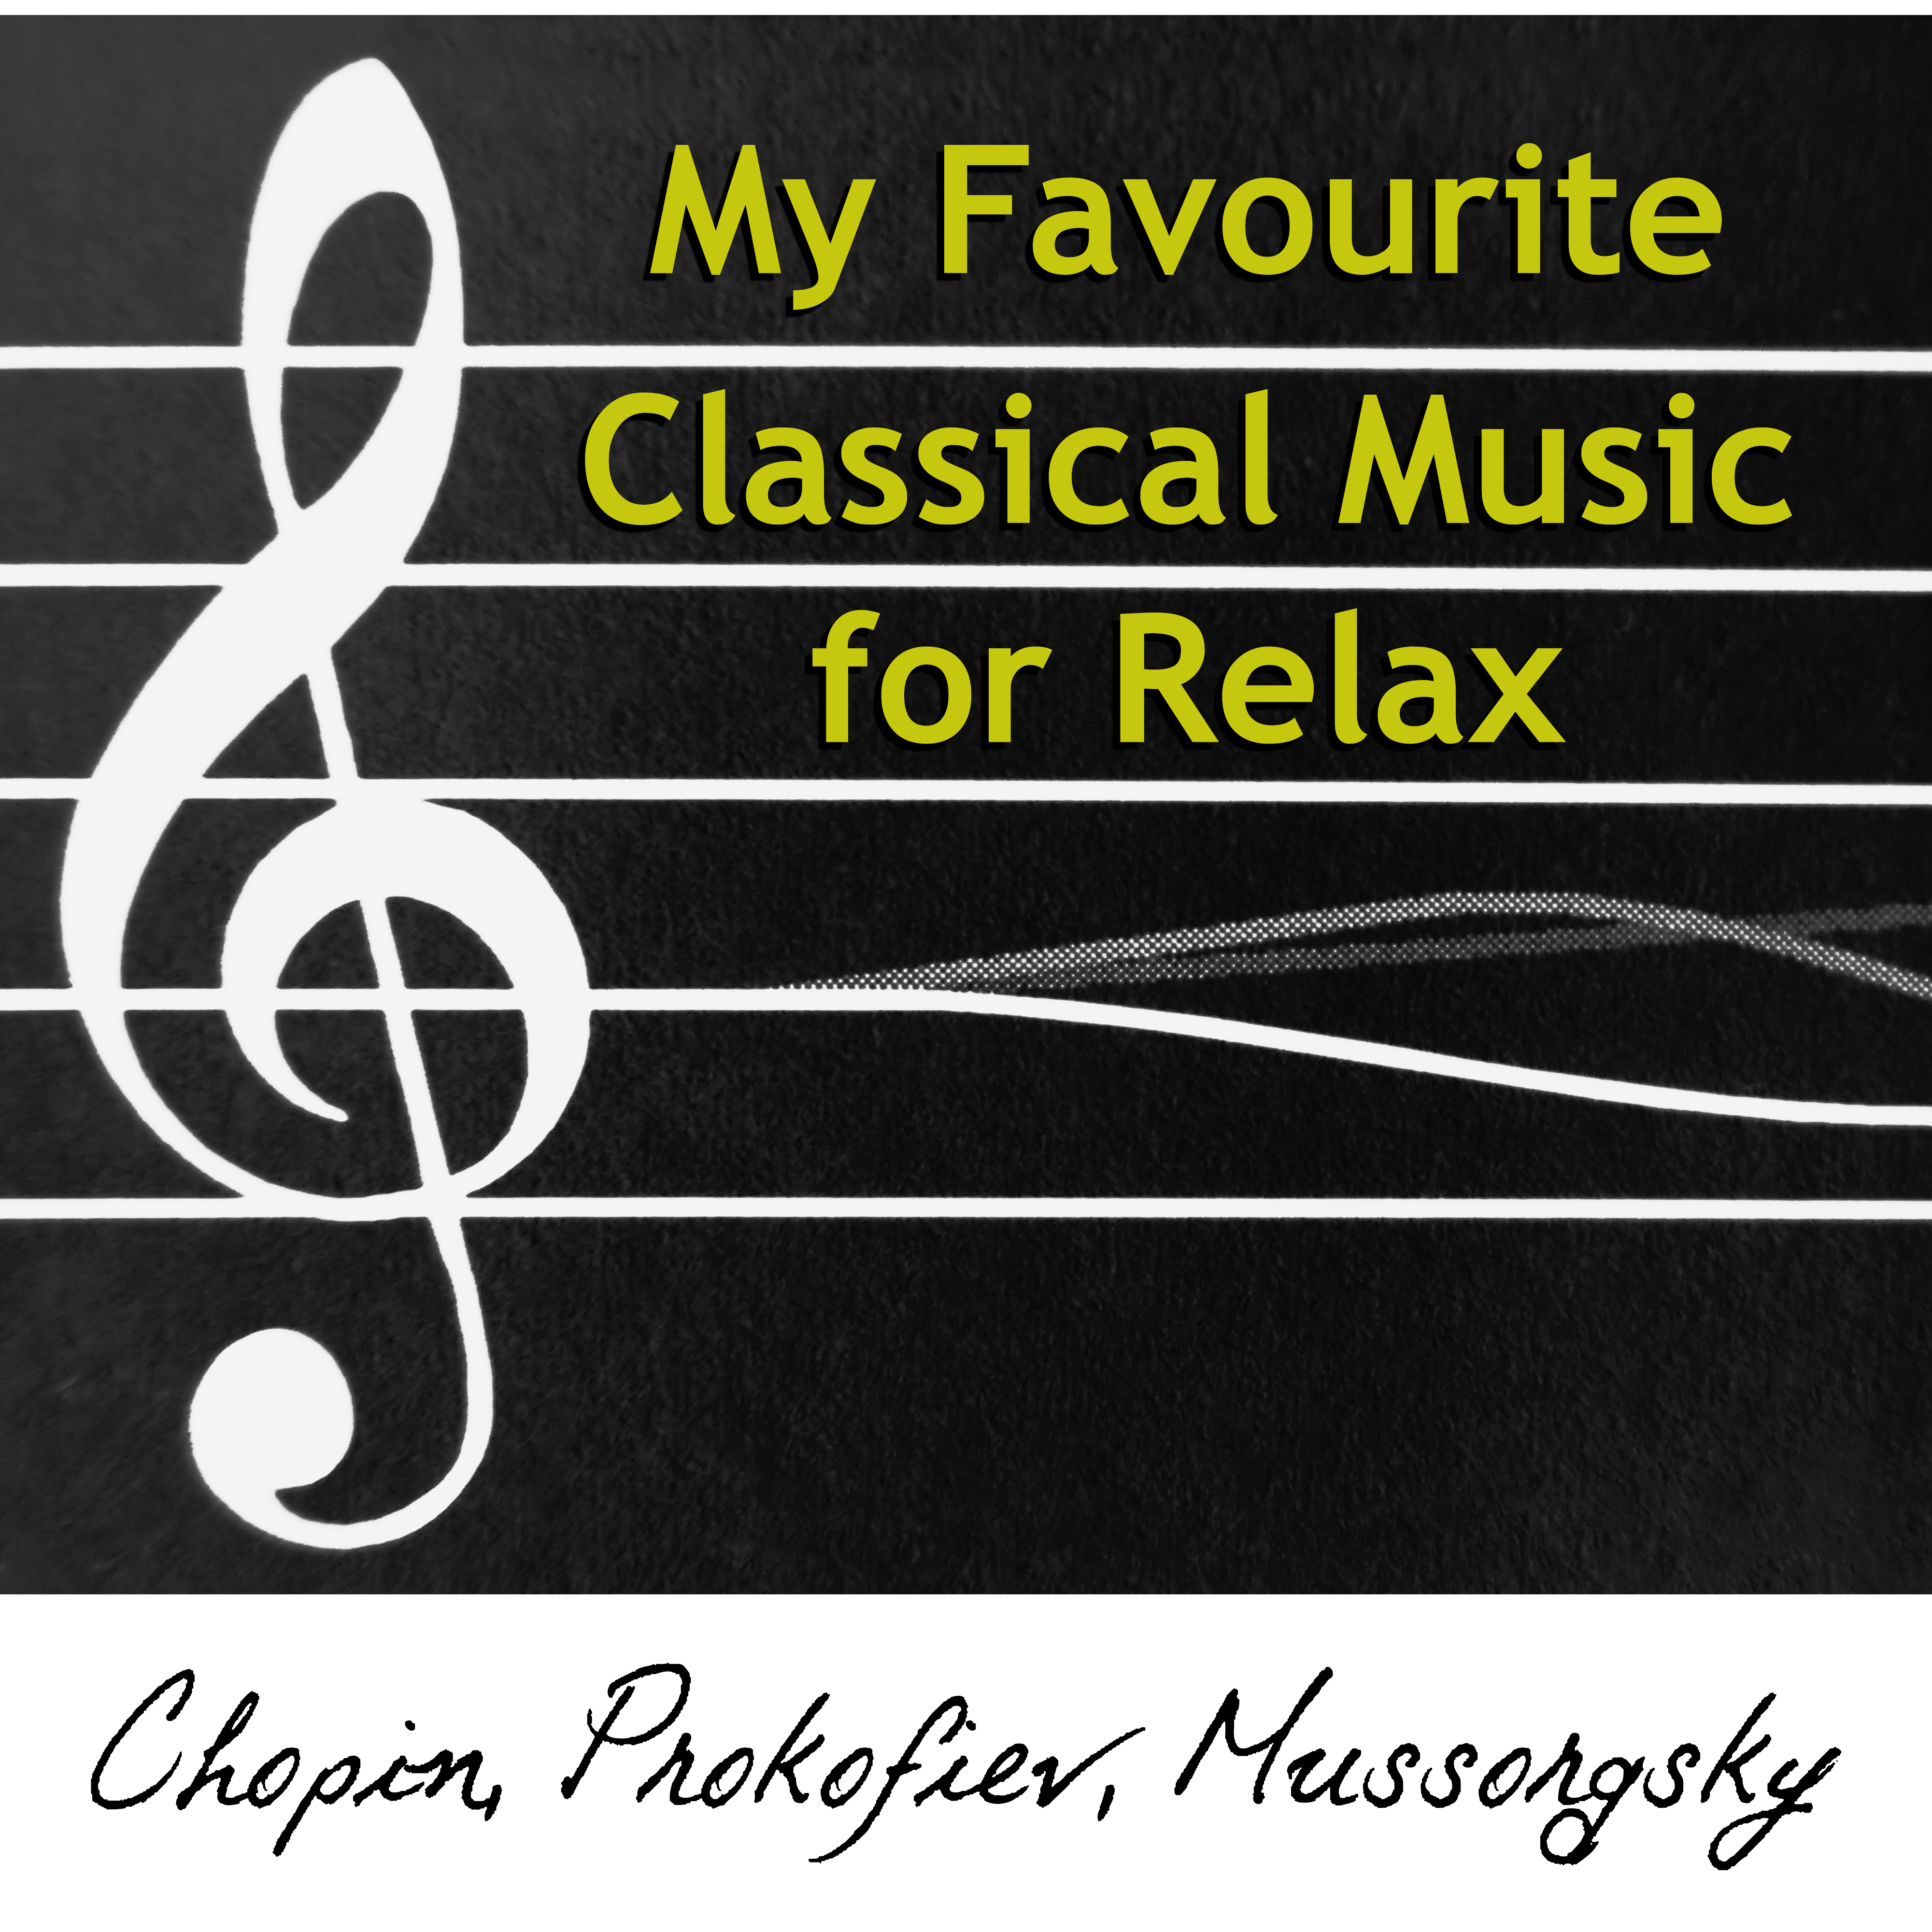 Morceaux de fantaisie in B-Flat Minor, Op. 3: V. Serenade